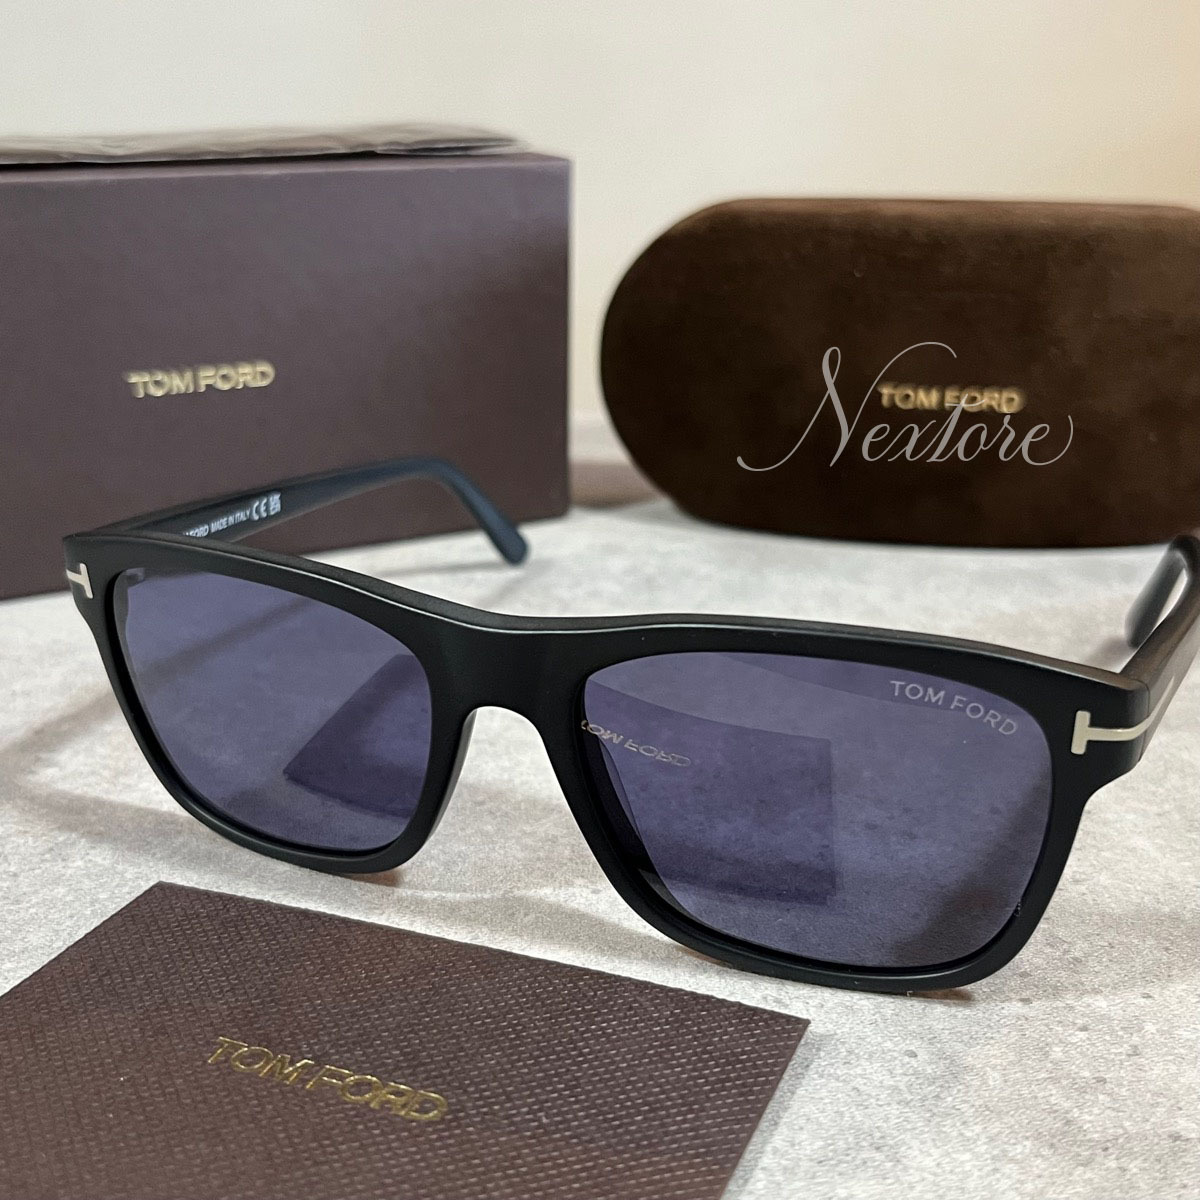  regular goods new goods Tom Ford TF698 02V glasses sunglasses glasses I wear TOM FORD